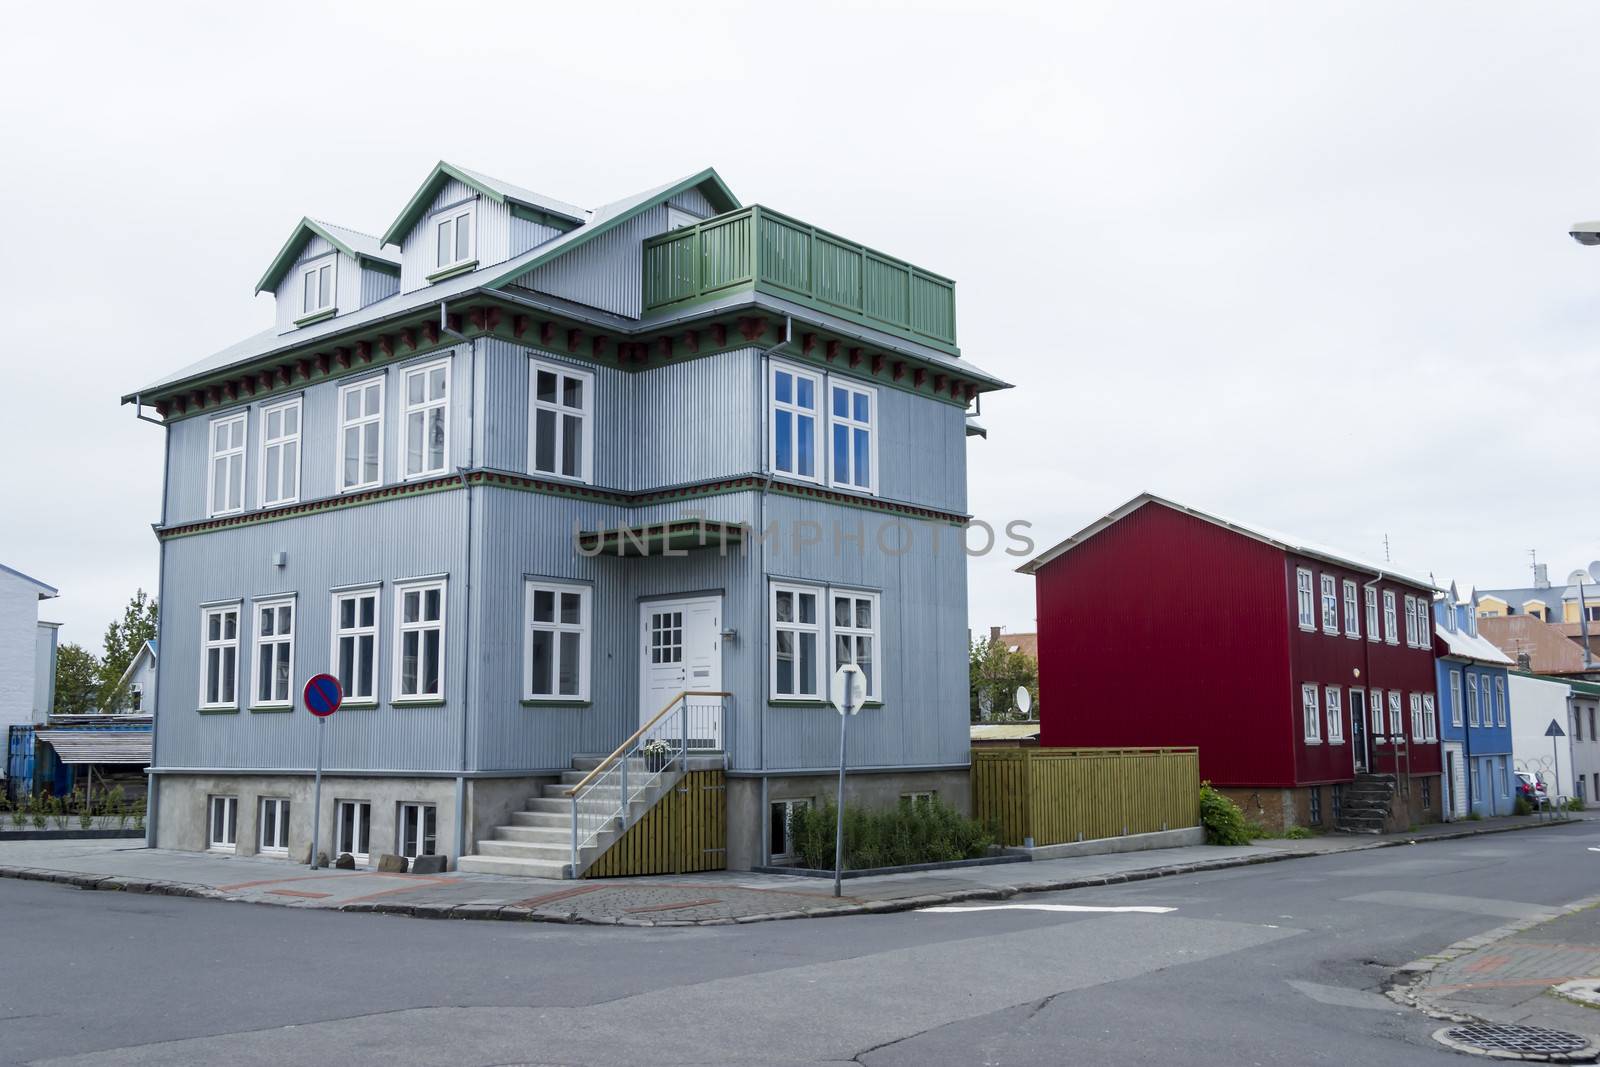 Buildings in Reykjavik